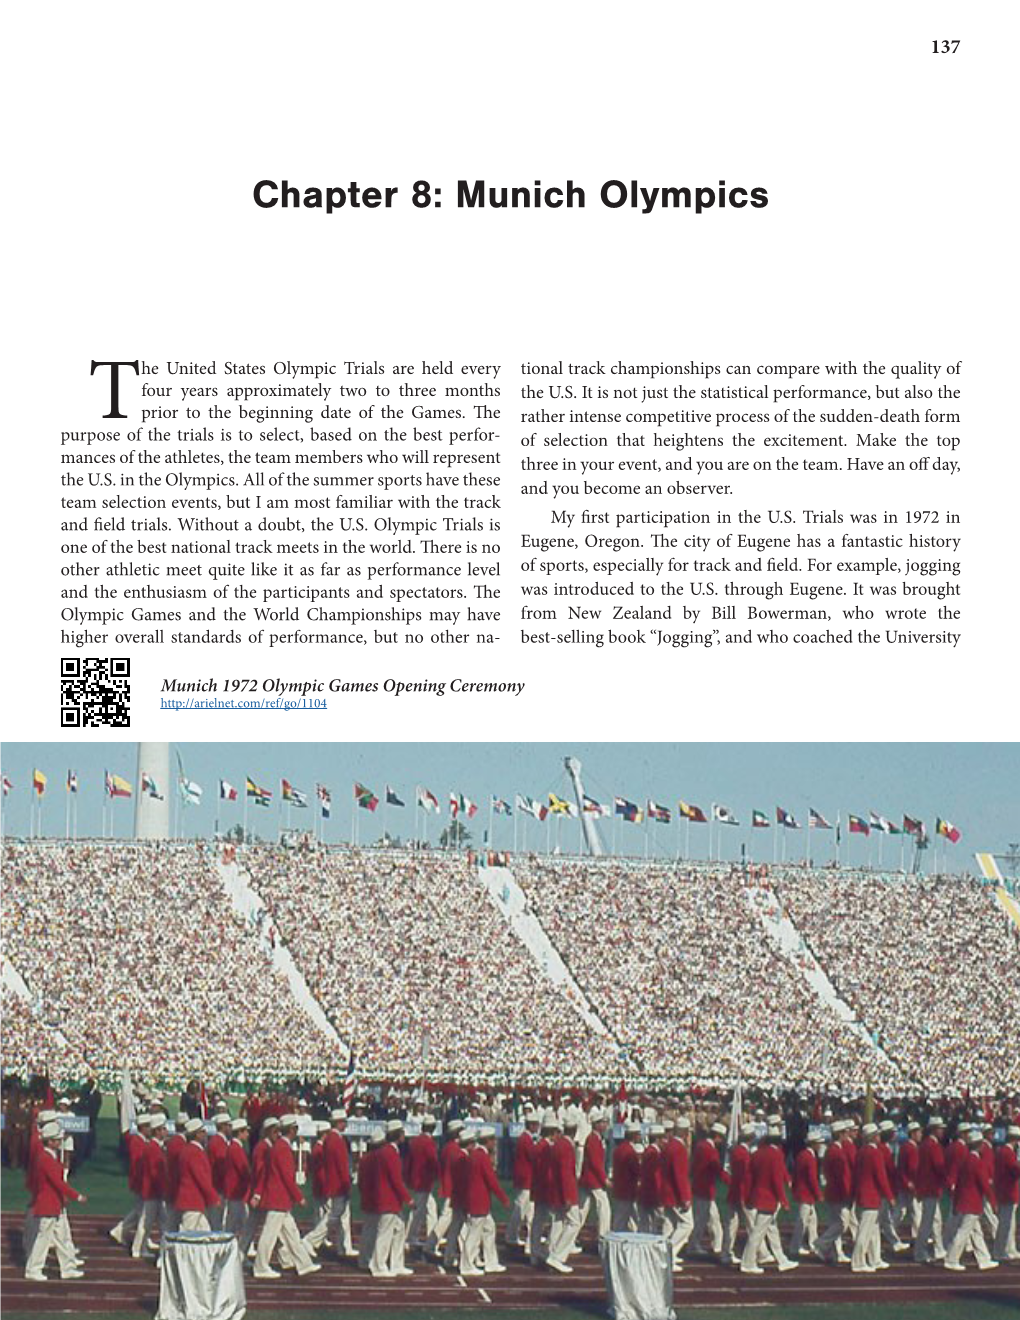 Munich Olympics